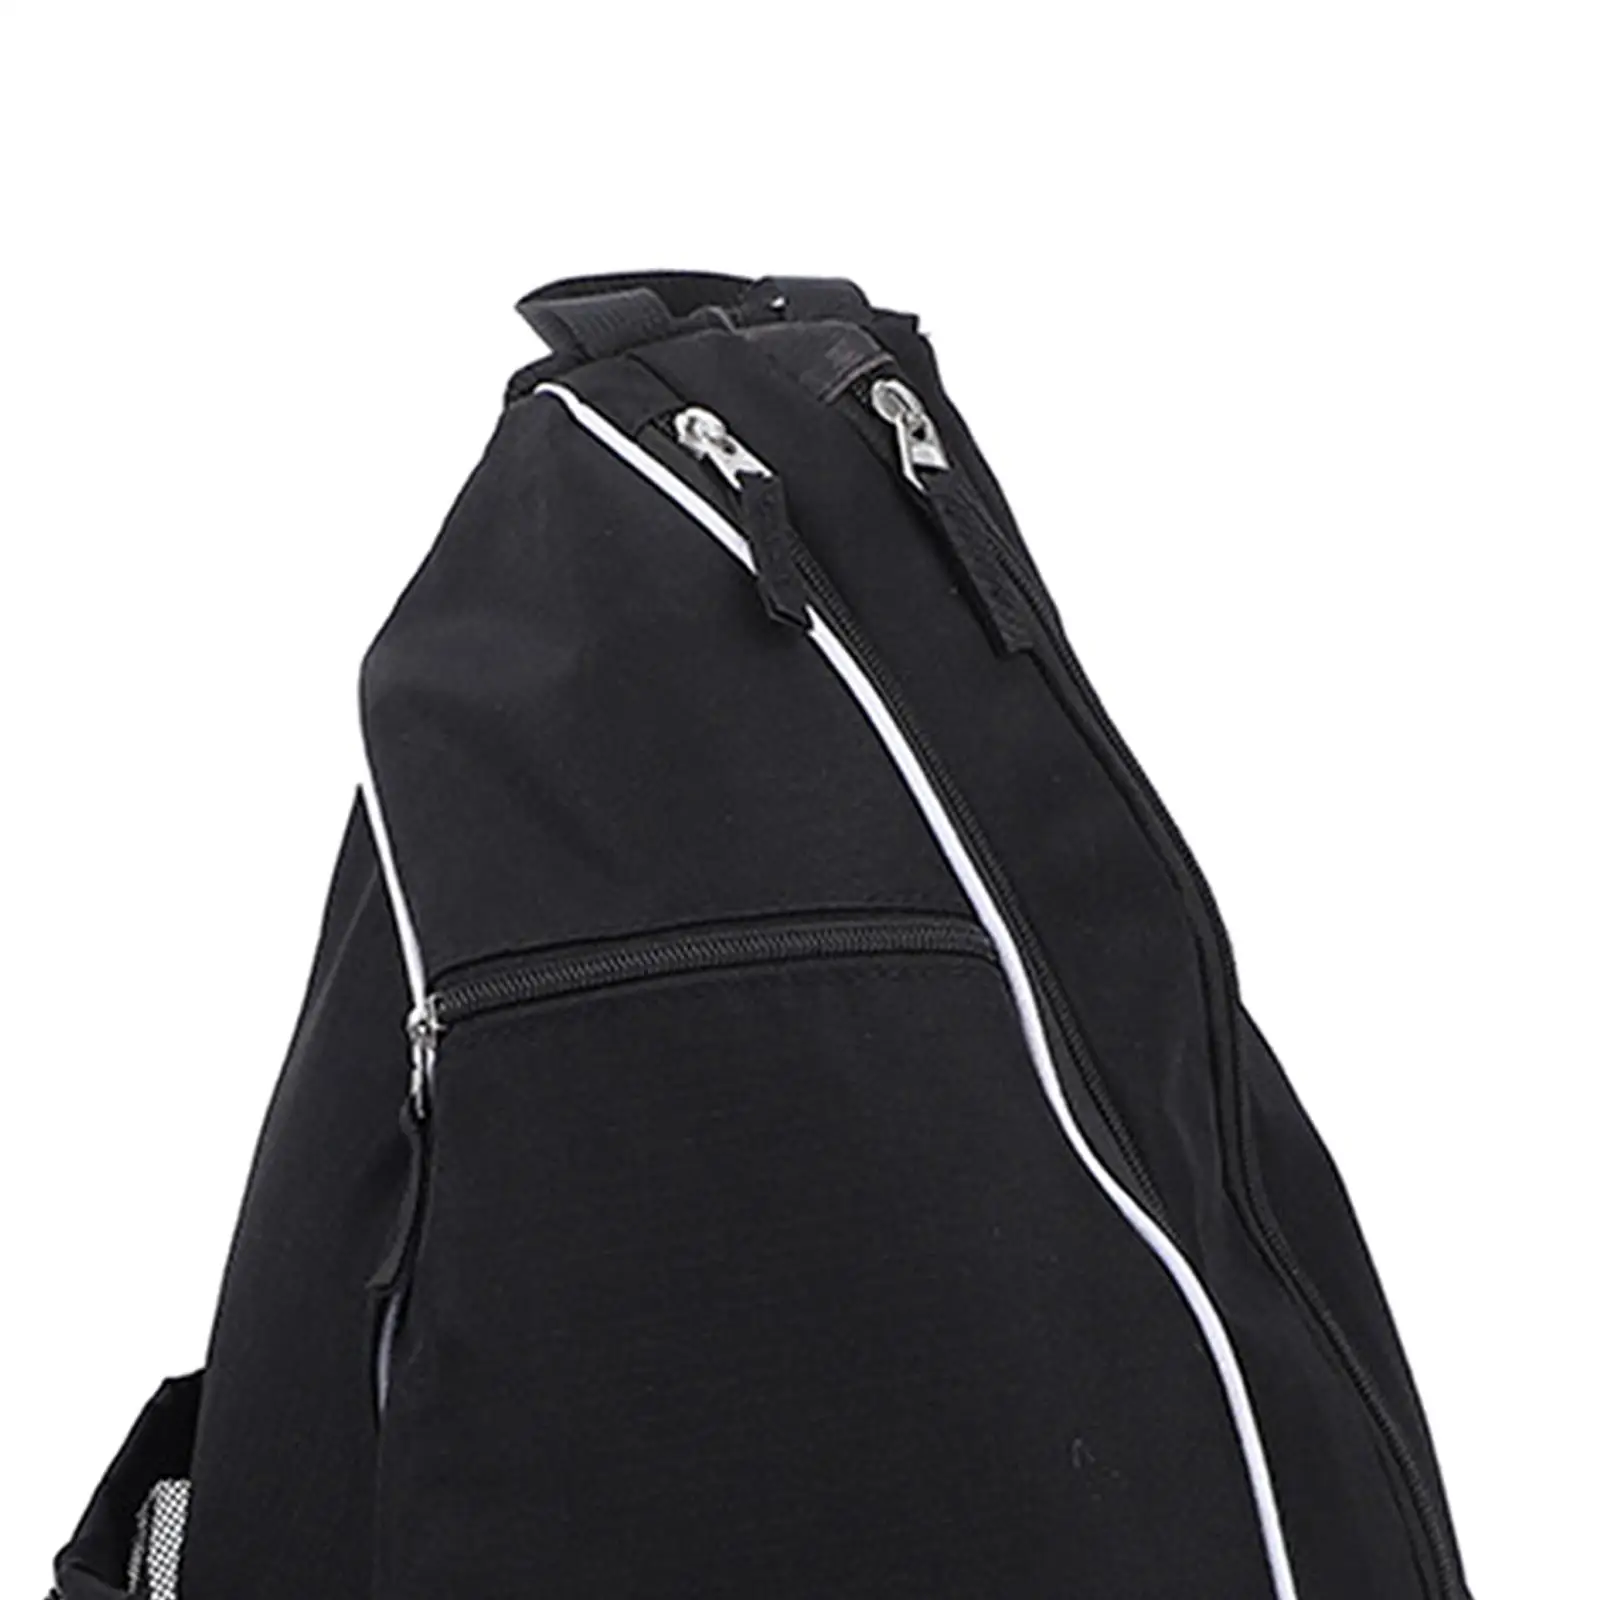 Pickleball Backpack with Adjustable Shoulder Straps Men Women Pickleball Bag